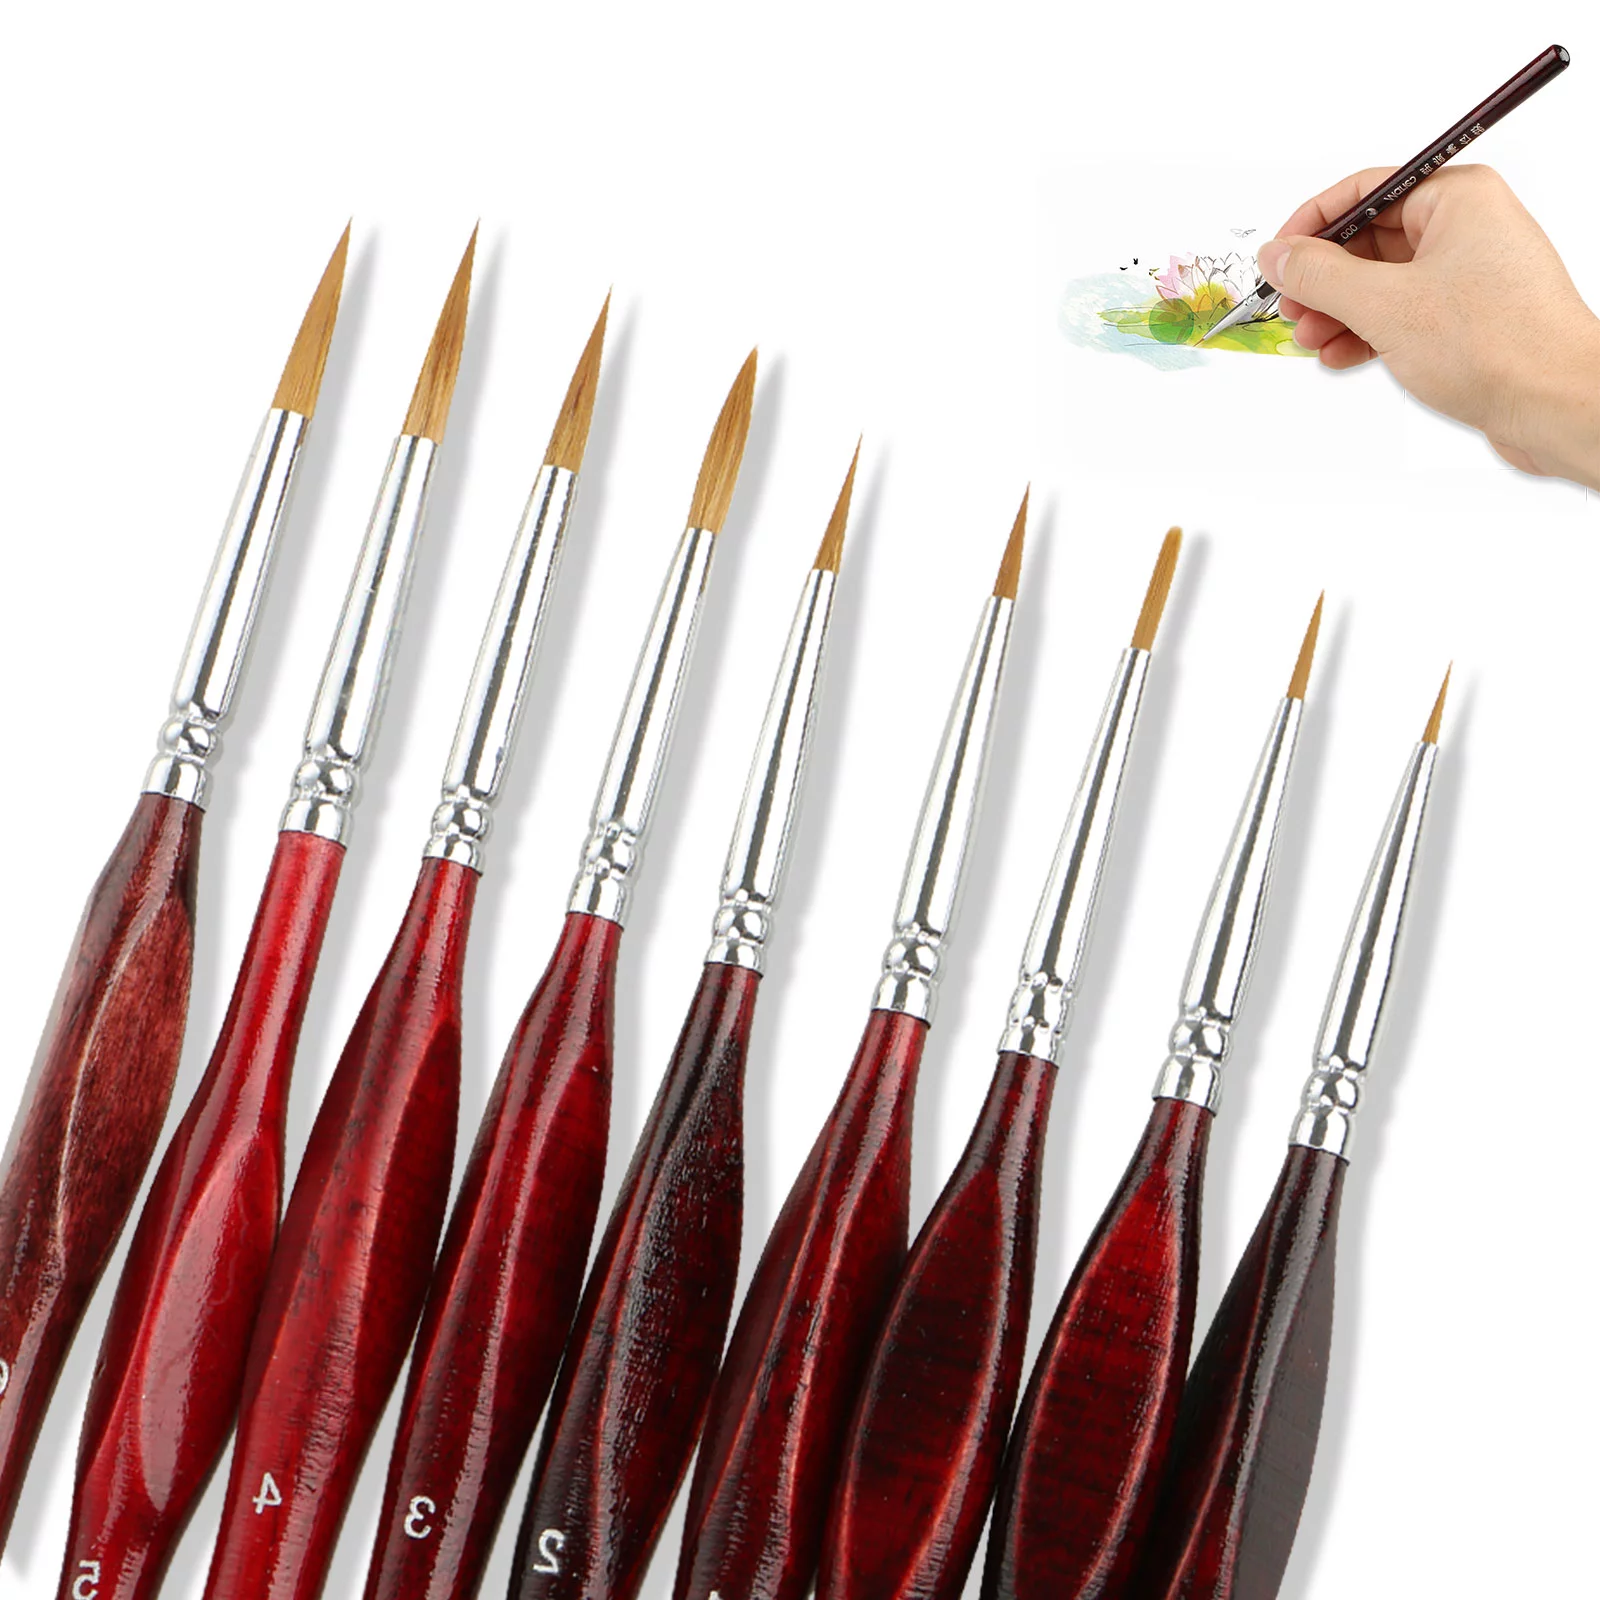 Professional Bristle Paint Brushes - No Shedding, Versatile Assortment -  11pcs